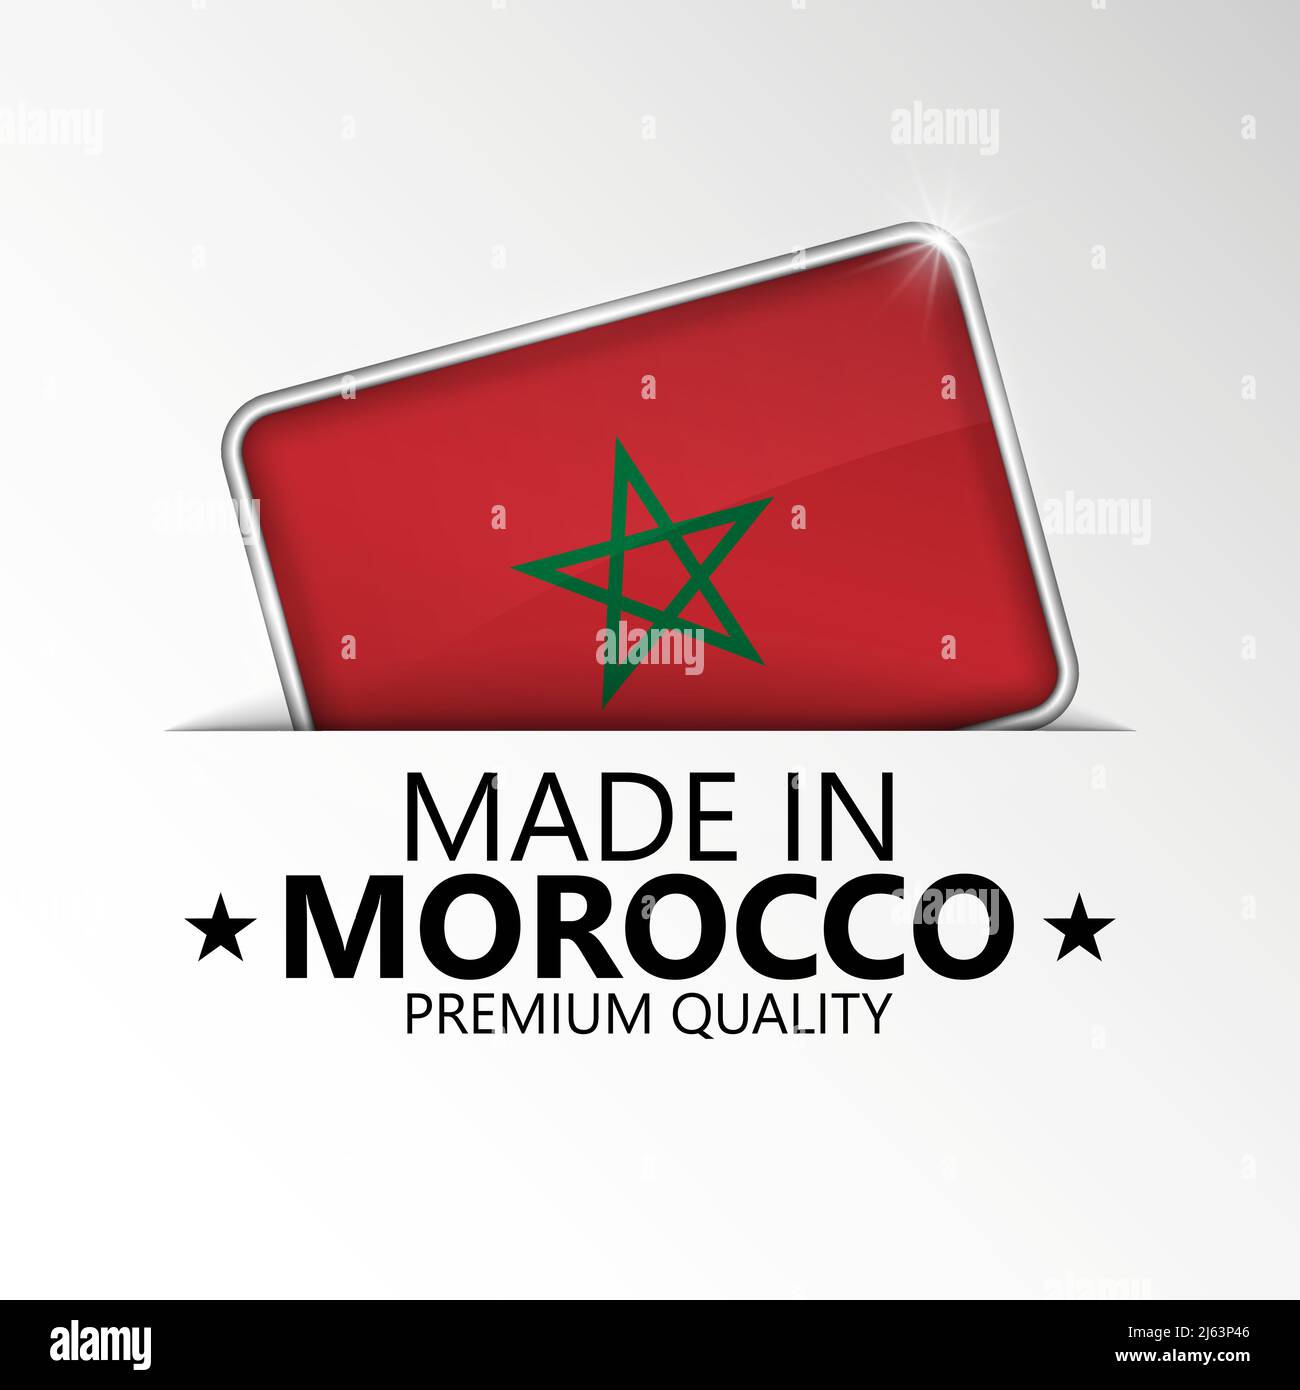 Realizzato in Marocco, grafica ed etichetta. Elemento di impatto per l'uso che si desidera fare di esso. Illustrazione Vettoriale